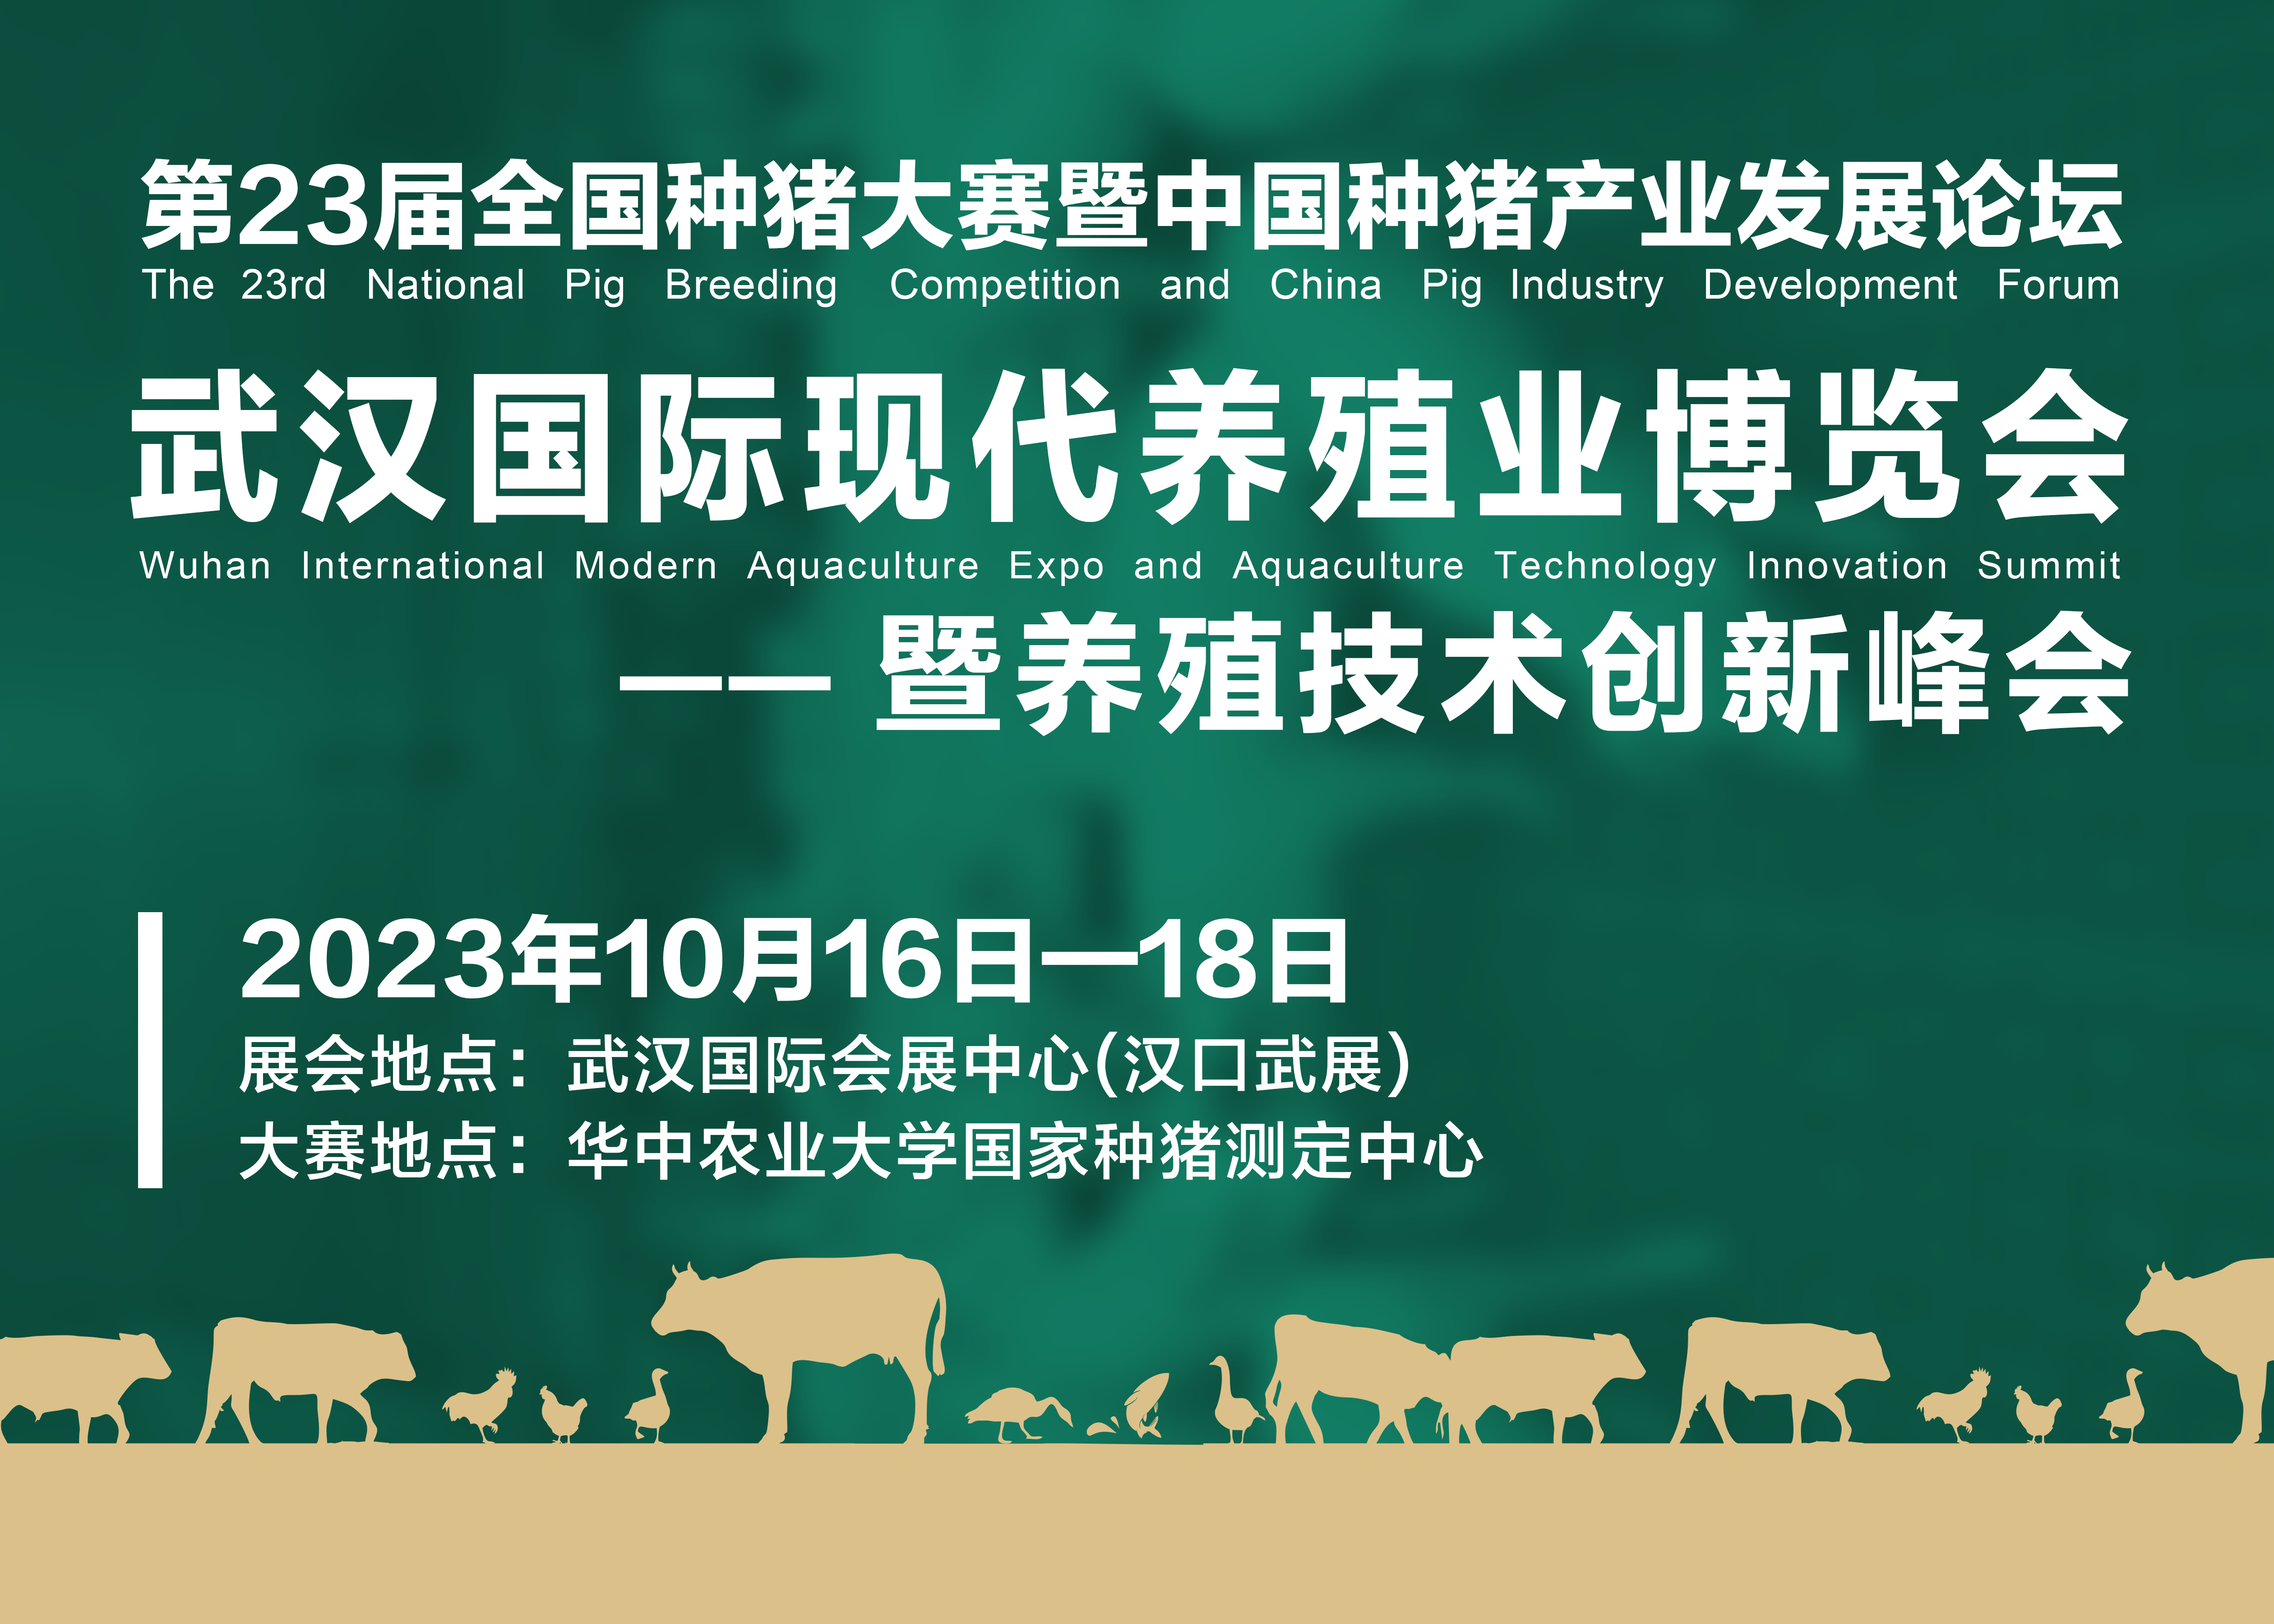 第 23 届全国种猪大赛暨中国种猪产业发展论坛 武汉国际现代养殖业博览会暨养殖技术创新峰会